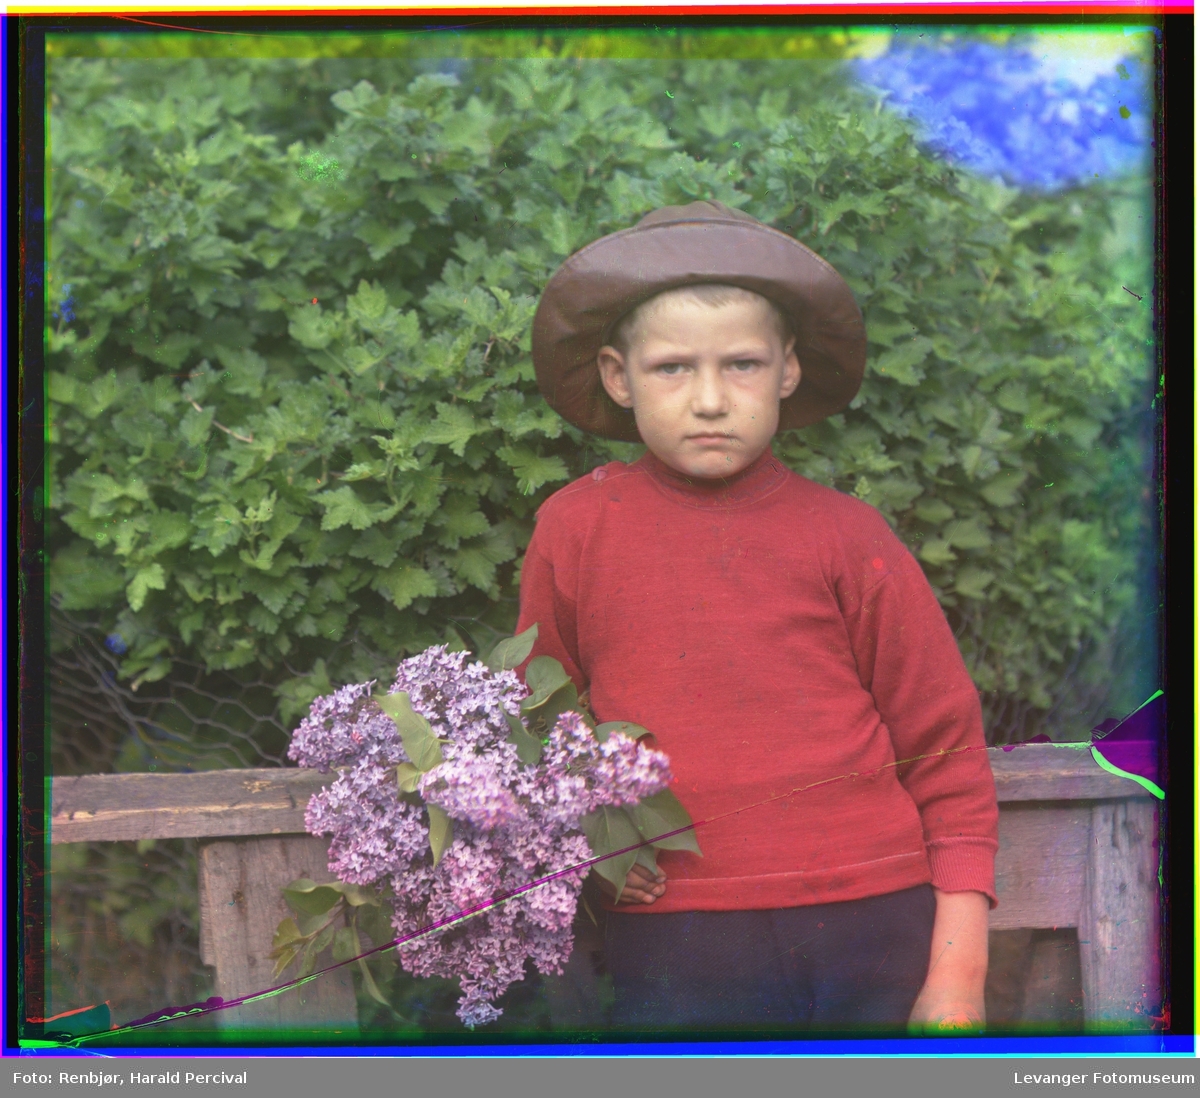 Portrett av gutt med syrinbukett.